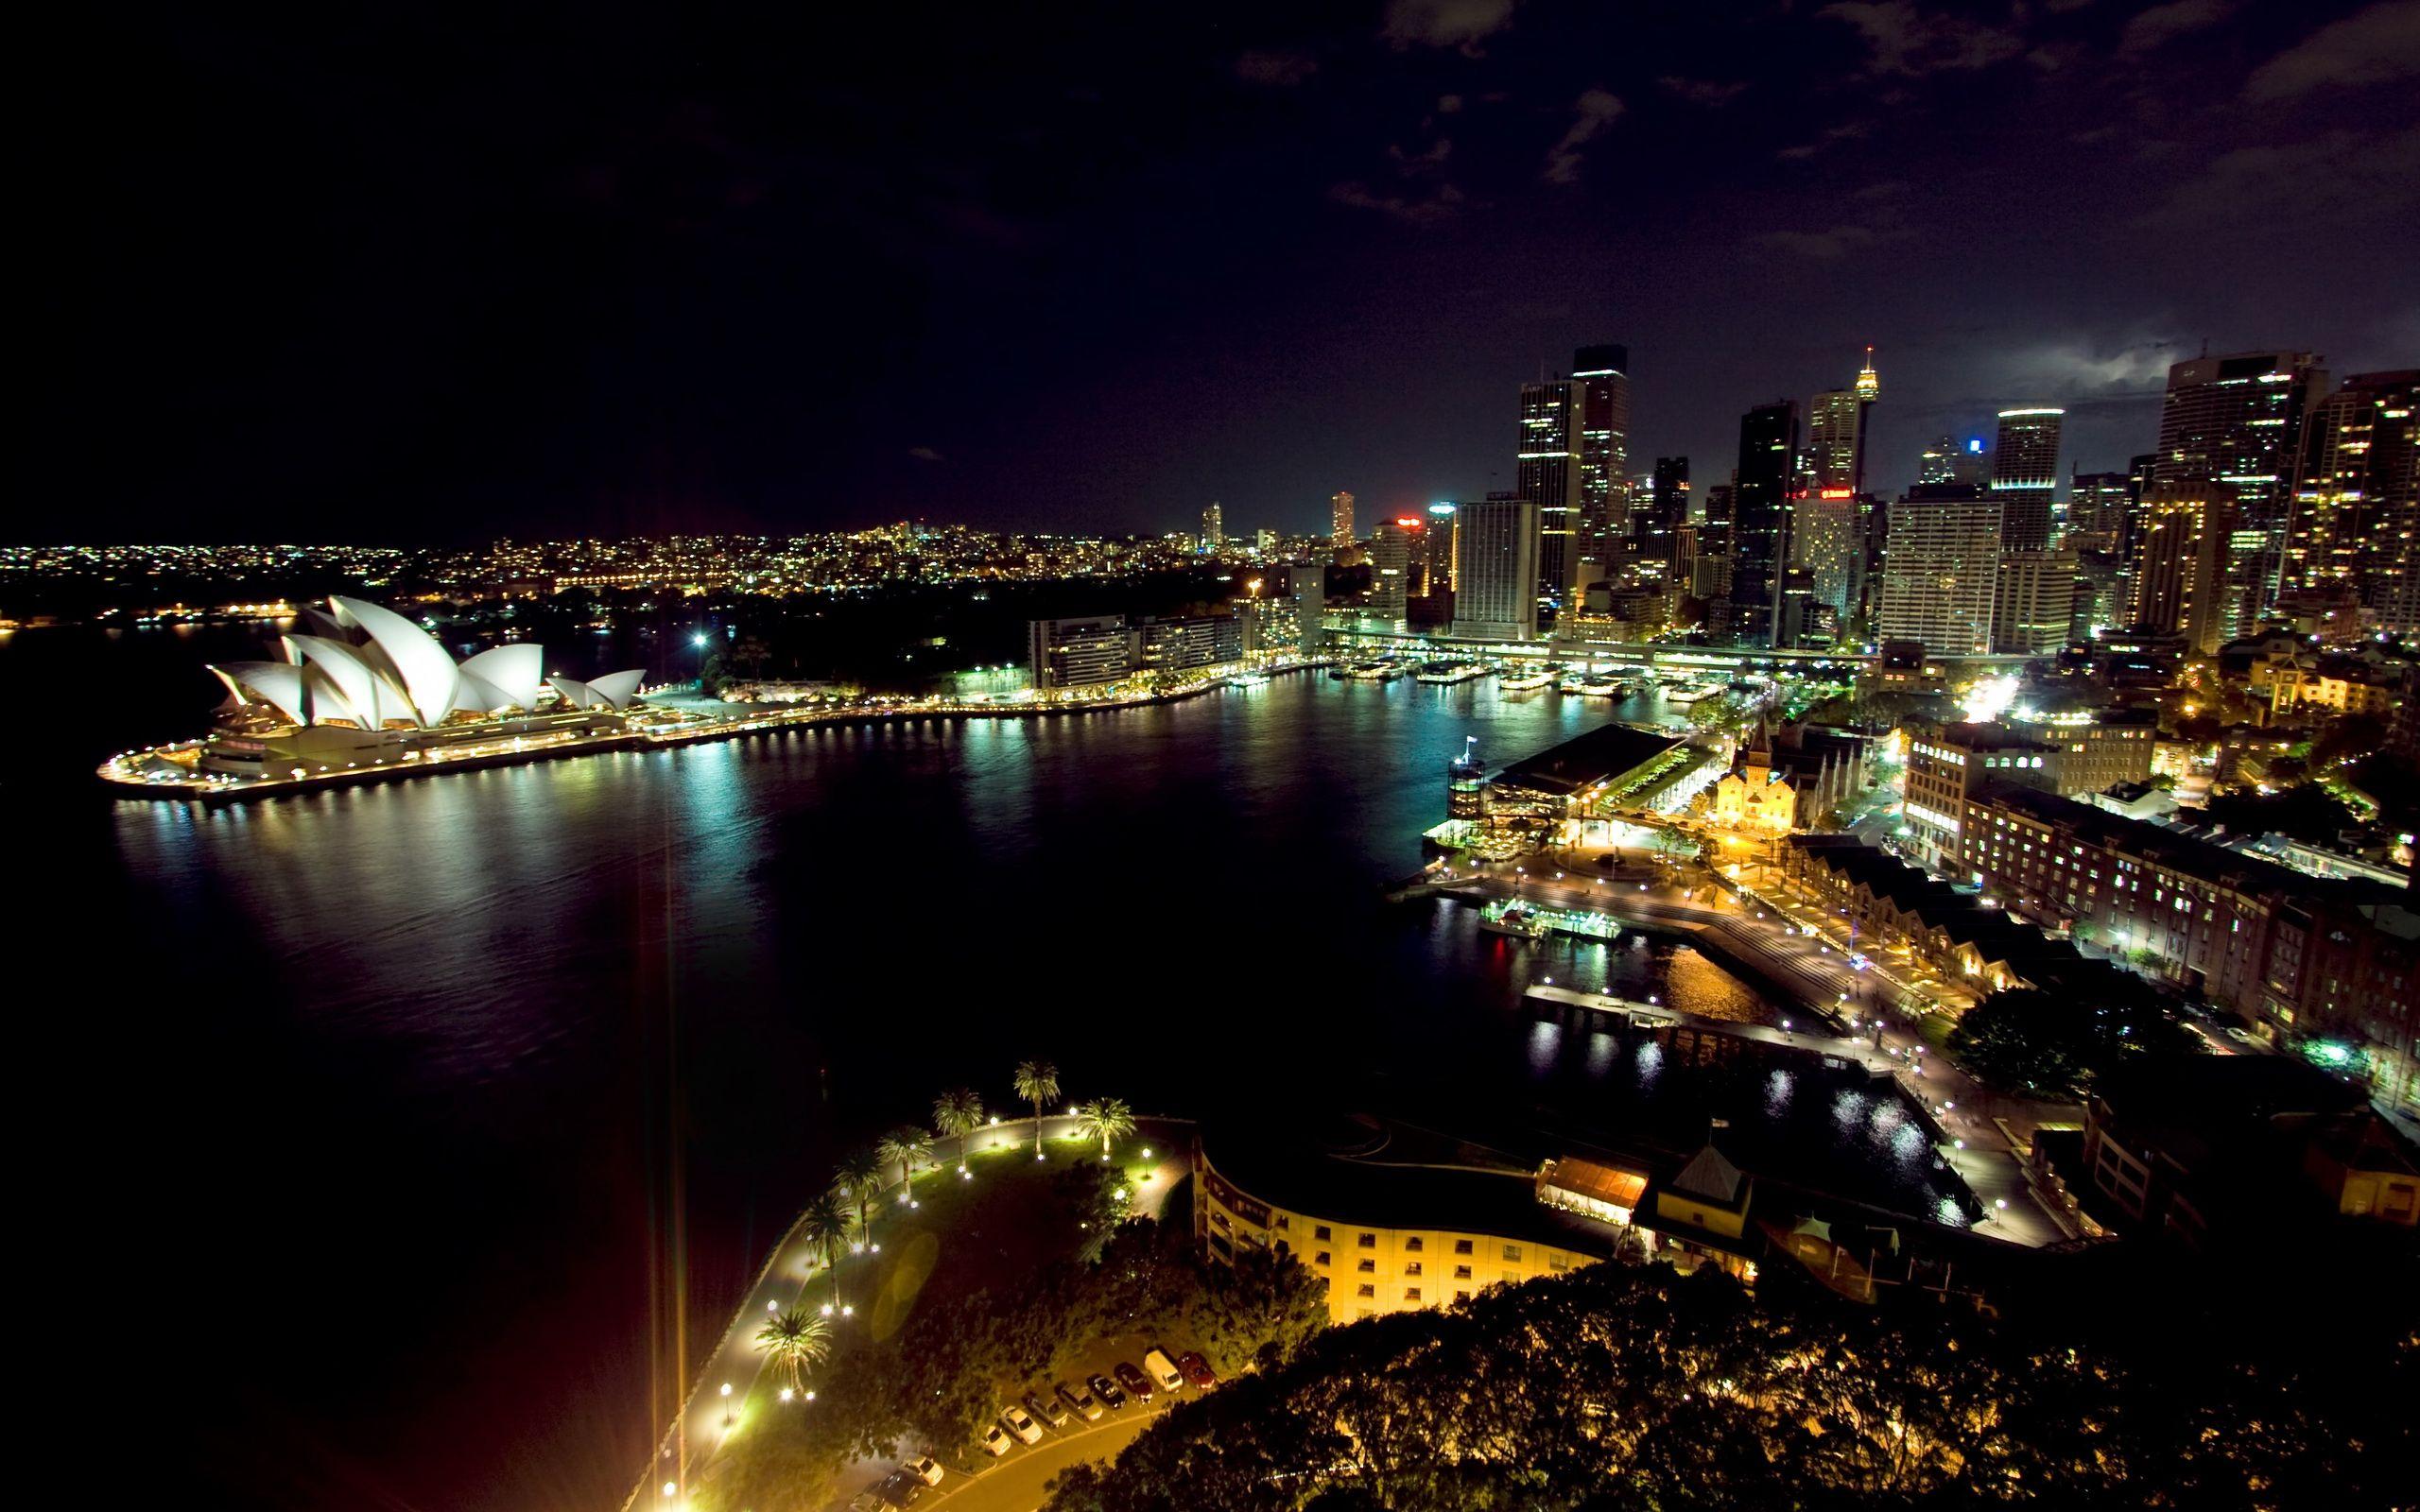 HD Sydney Wallpaper: The Roar Of Opera House In The Harbor